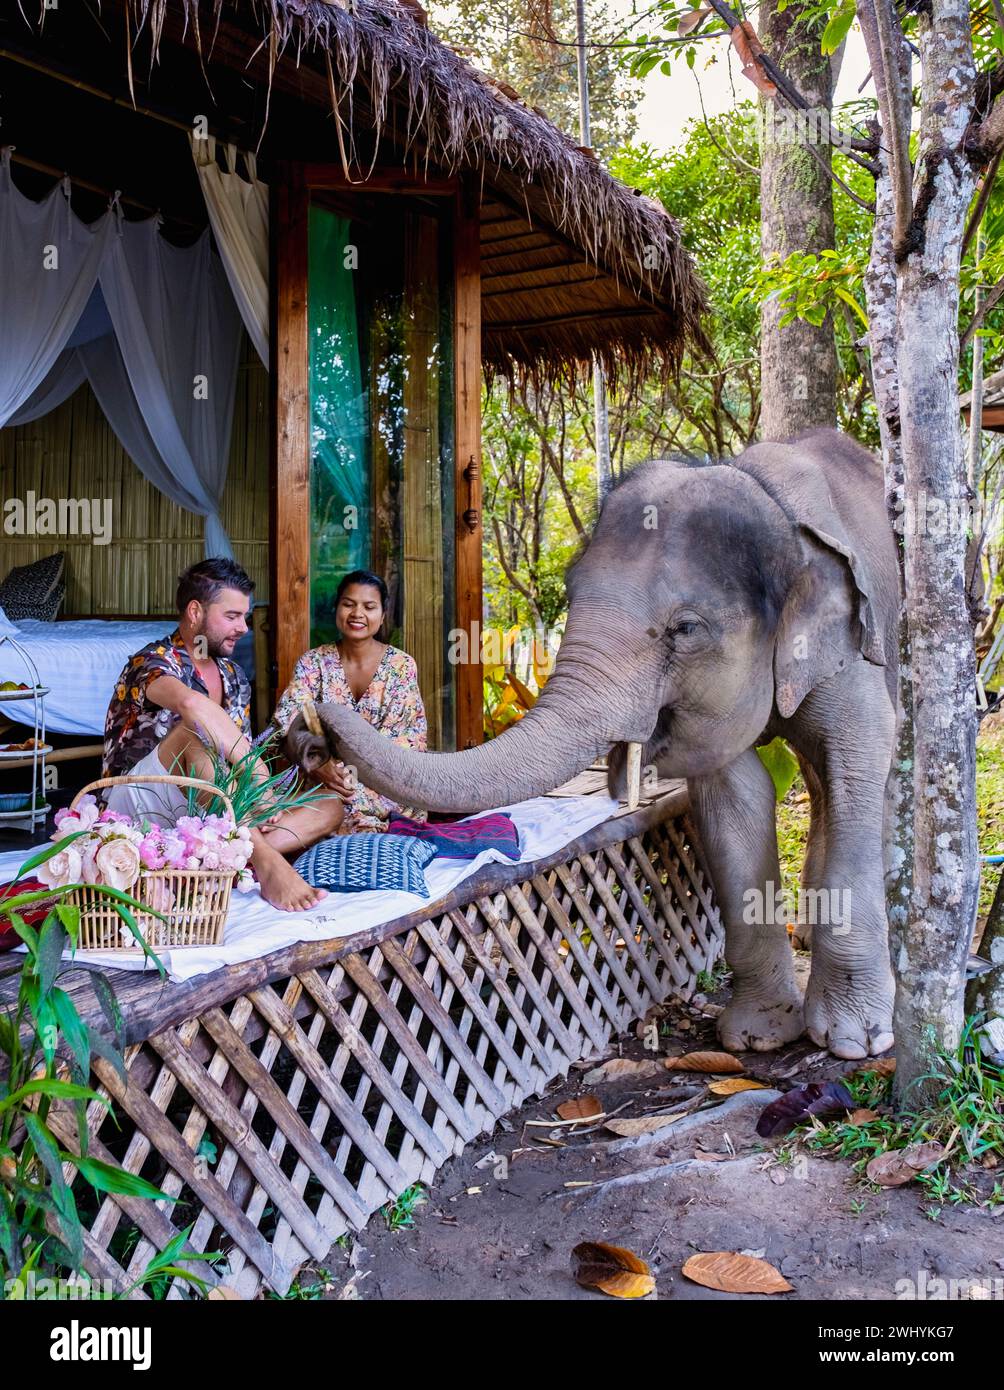 Ein Paar besucht ein Elefantenschutzgebiet in Chiang Mai Thailand, eine Elefantenfarm im Bergdschungel Stockfoto